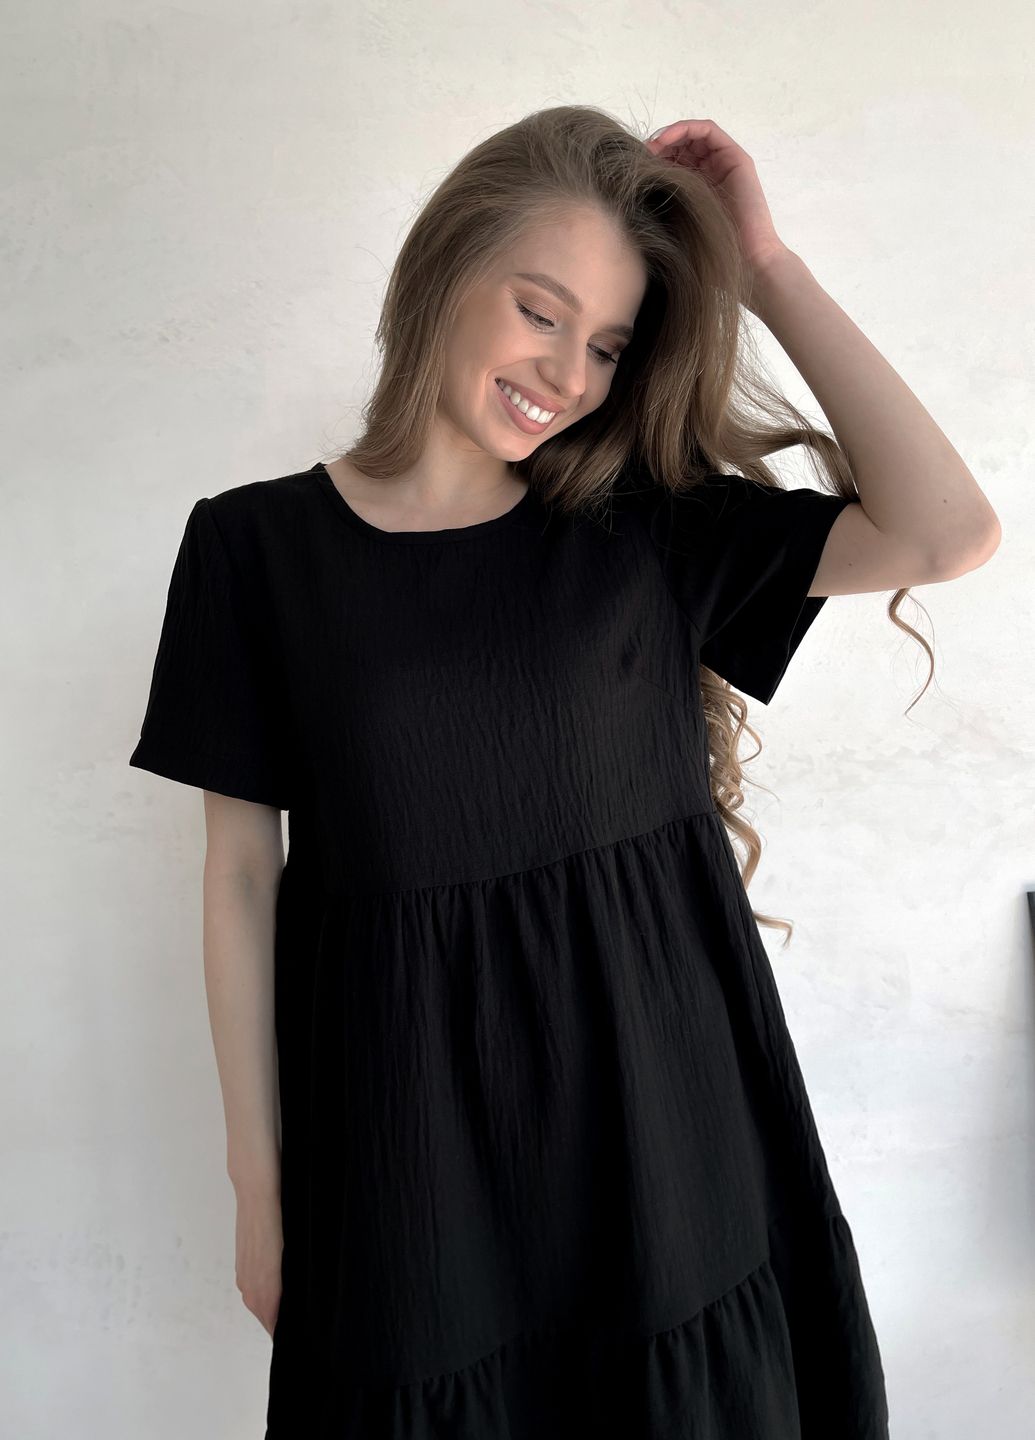 Купить Женское платье до колена однотонное с коротким рукавом из льна черное Merlini Сесто 700000161, размер 42-44 (S-M) в интернет-магазине